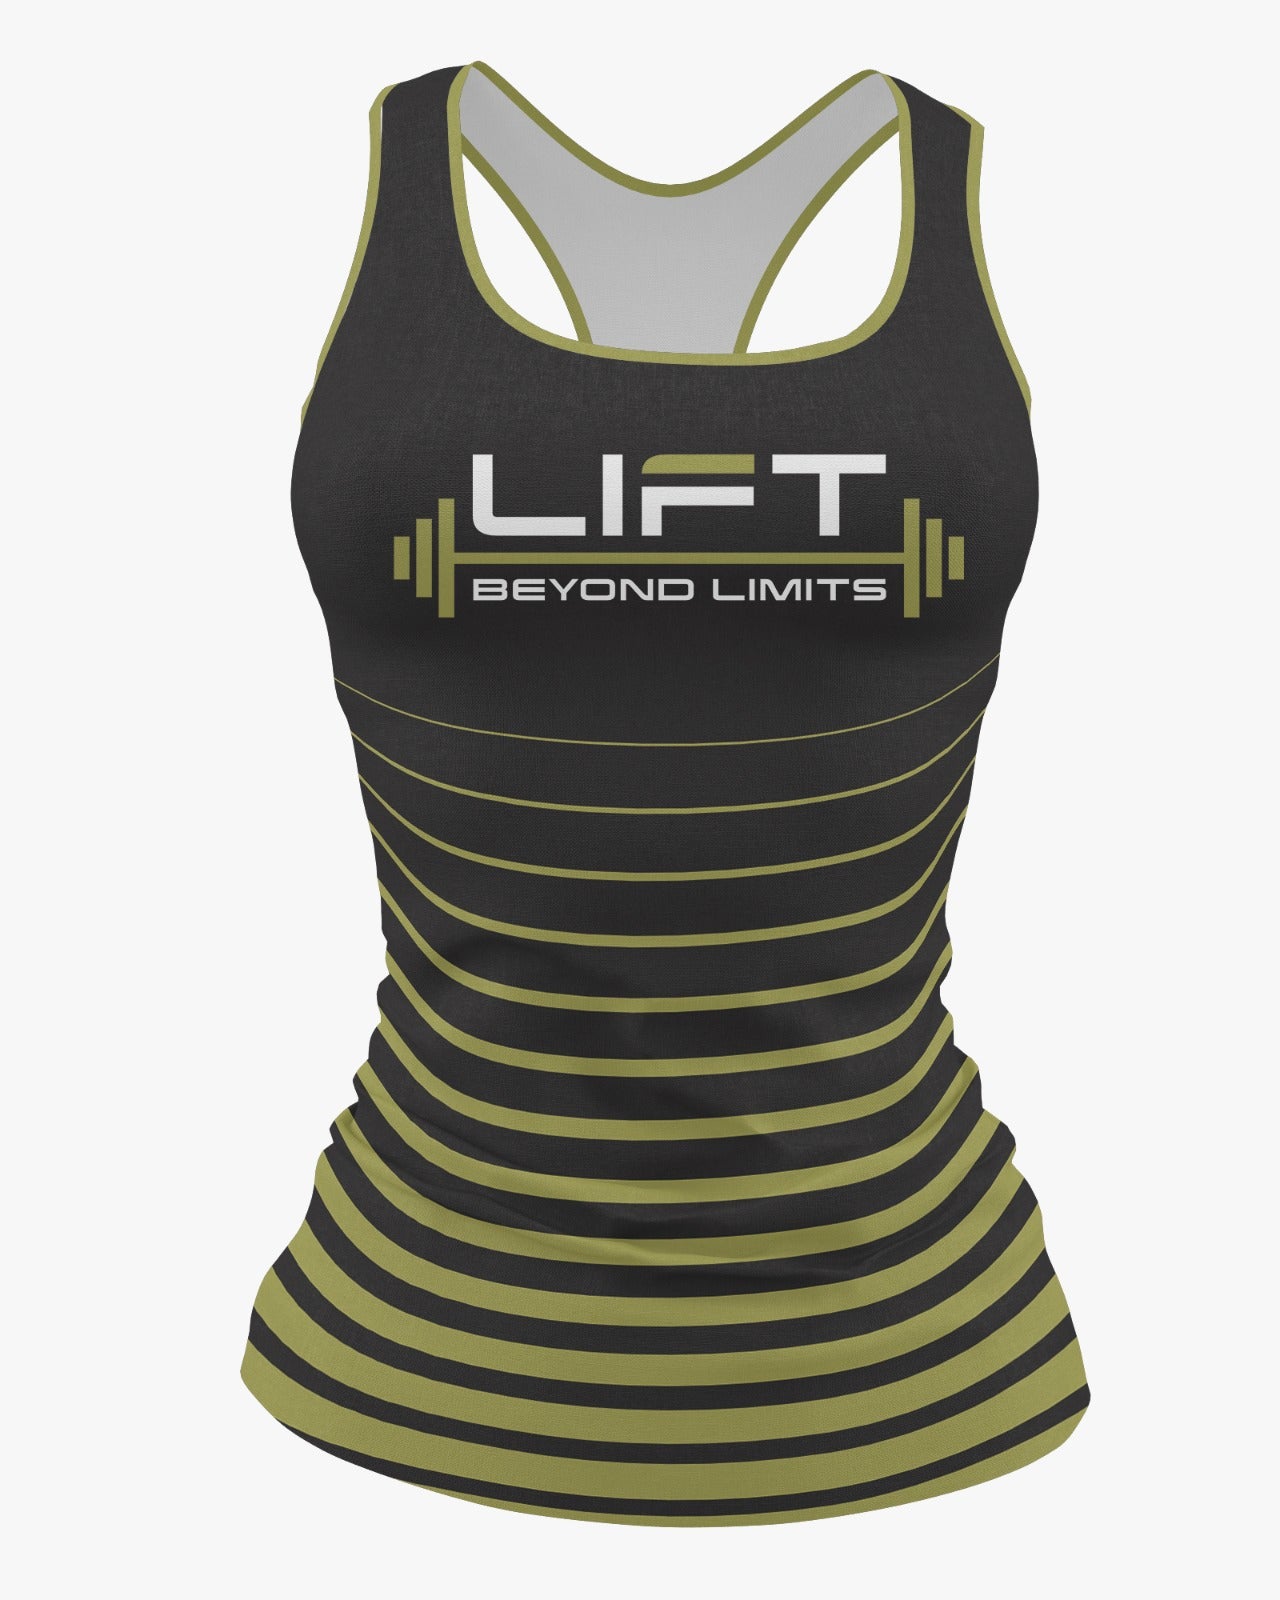 Lift Beyond Limits Performance Dri Tech Shirt ~ Striped